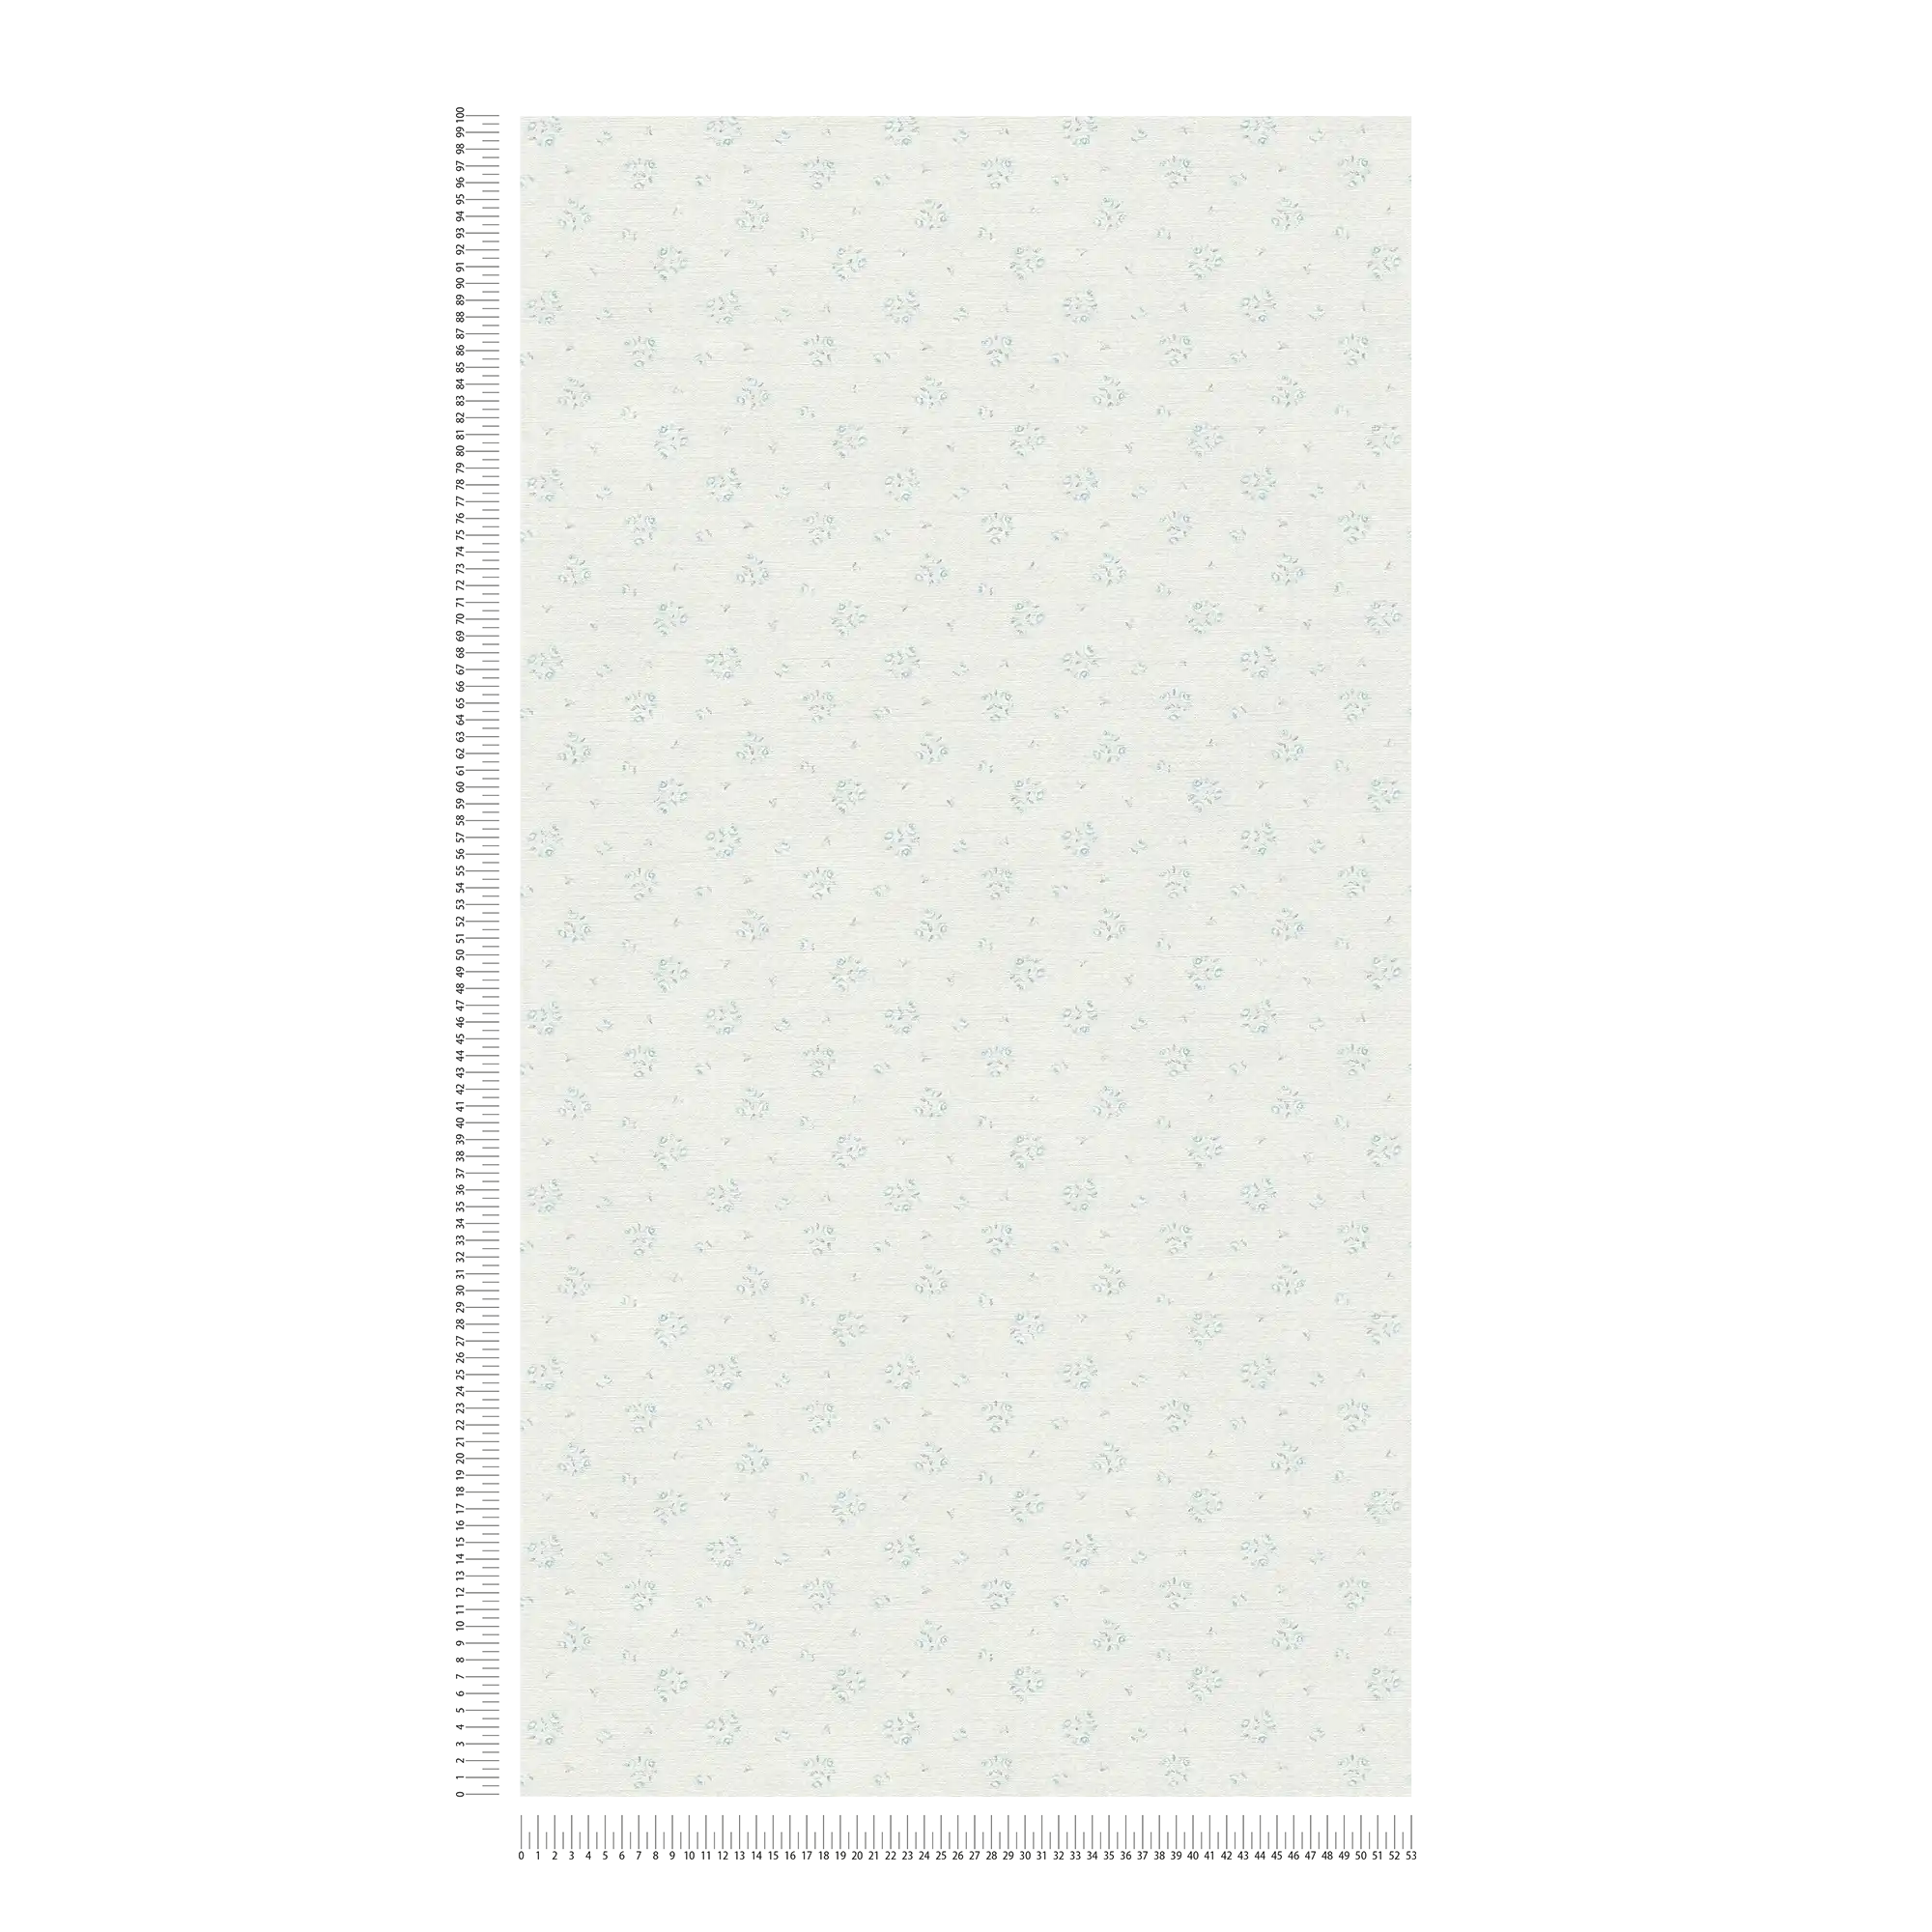             Carta da parati per case di campagna con motivi floreali in stile Shabby Chic - grigio chiaro, blu, bianco
        